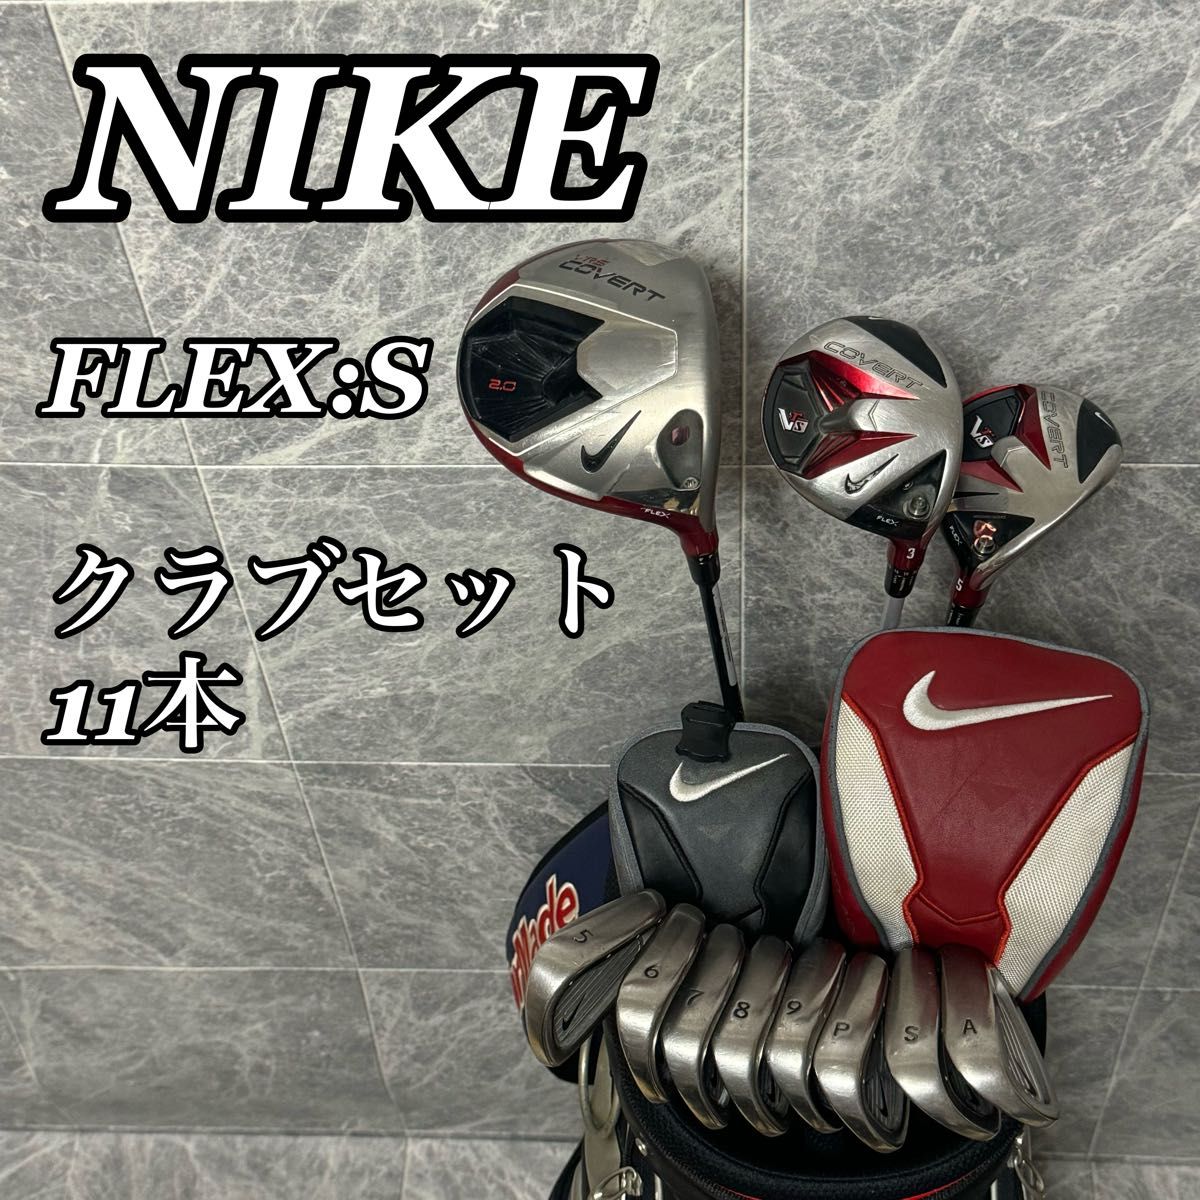 ナイキ ゴルフクラブセット 11本 S 初心者 メンズ VRS COVERT-